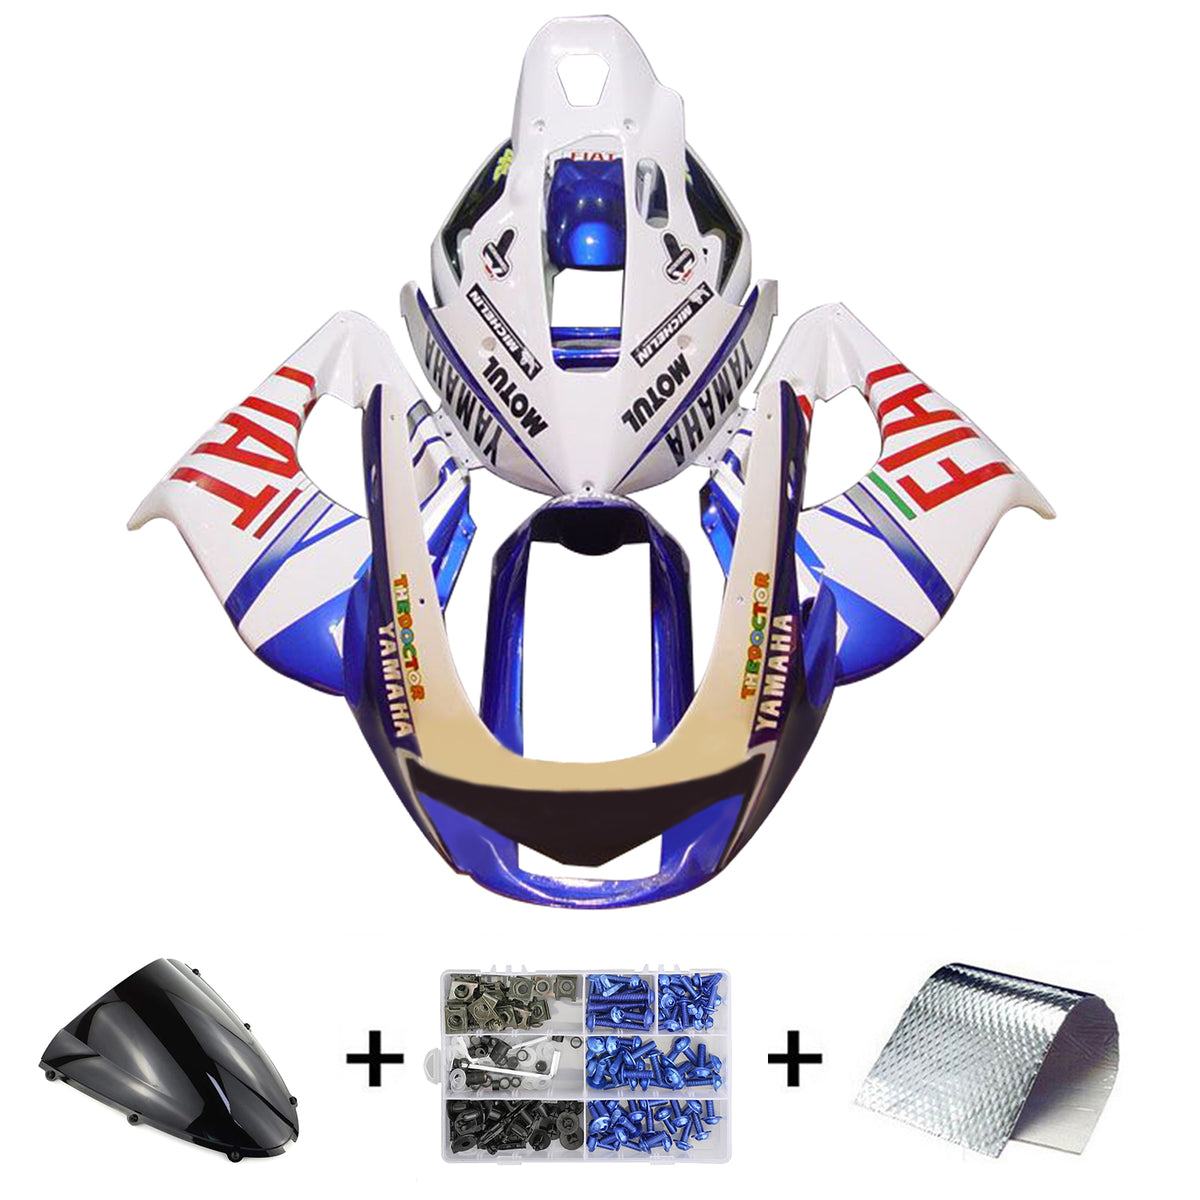 Amotopart 1997-2007 Kit carena Yamaha YZF1000R Thunderace bianco blu